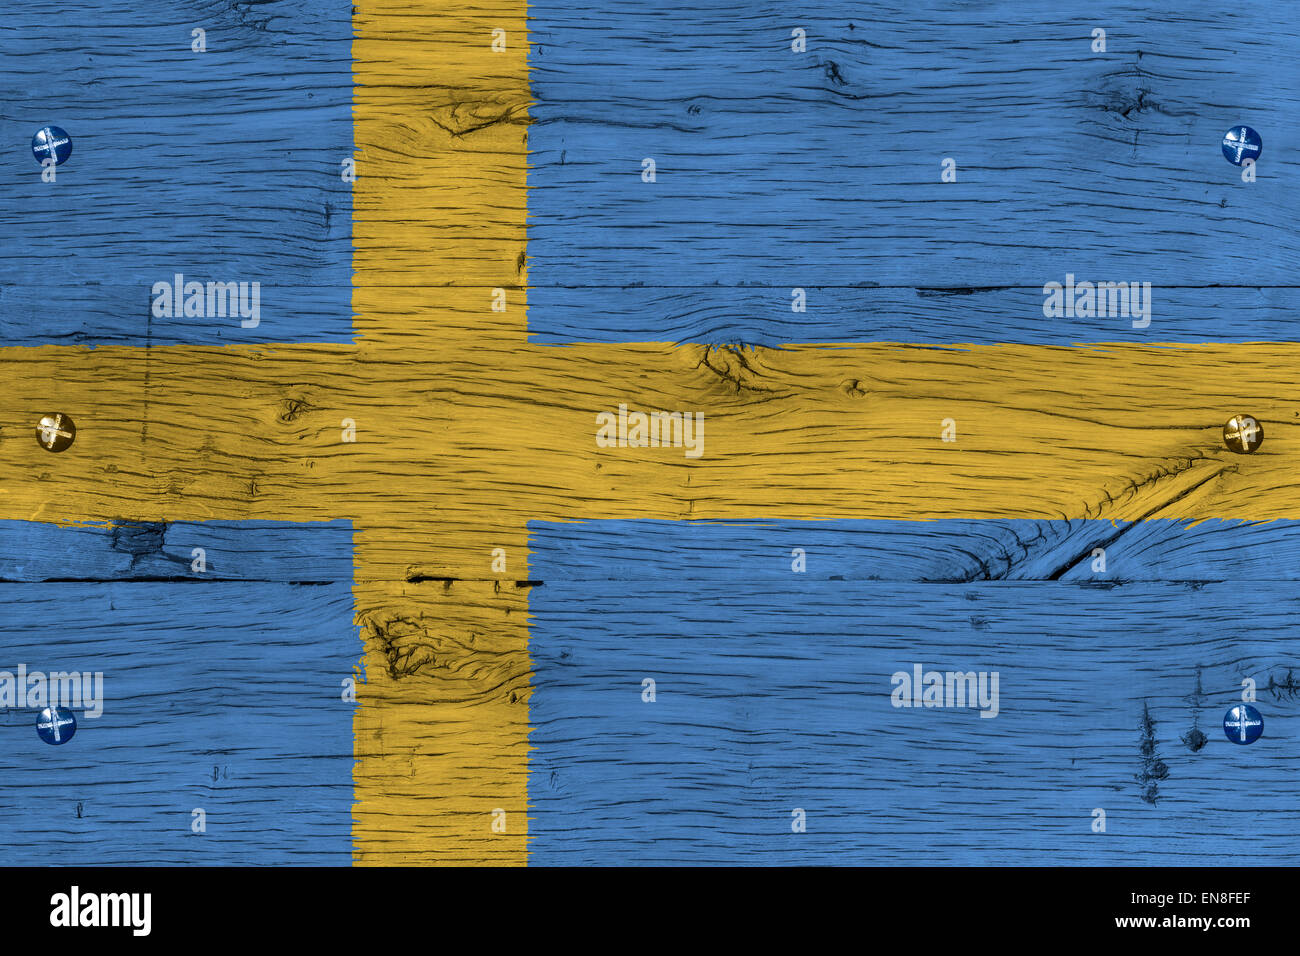 Royaume de Suède, drapeau national suédois. La peinture est colorée sur bois de vieux train transport. Fixation par vis ou boulons. Banque D'Images